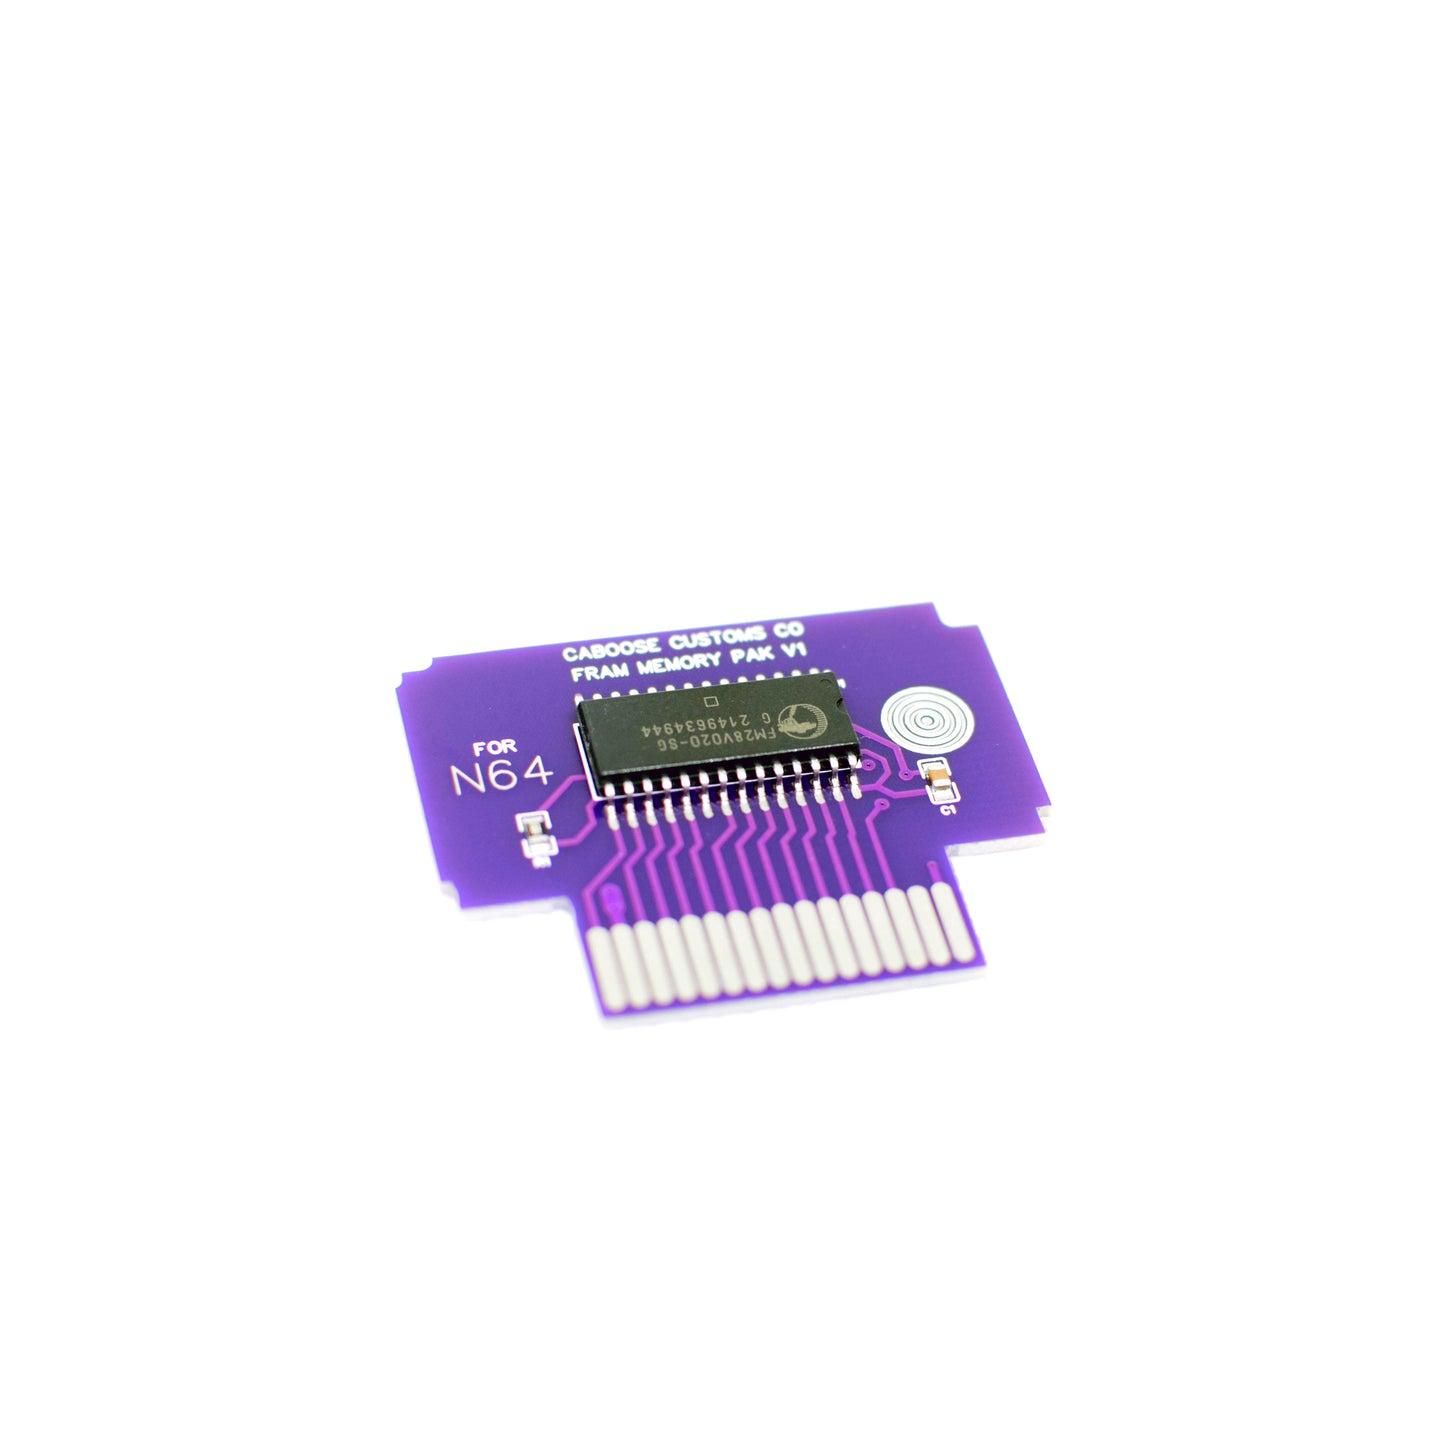 FRAM Nintendo N64 Controller Pak / Memory Pack FOREVER Upgrade - New Production!